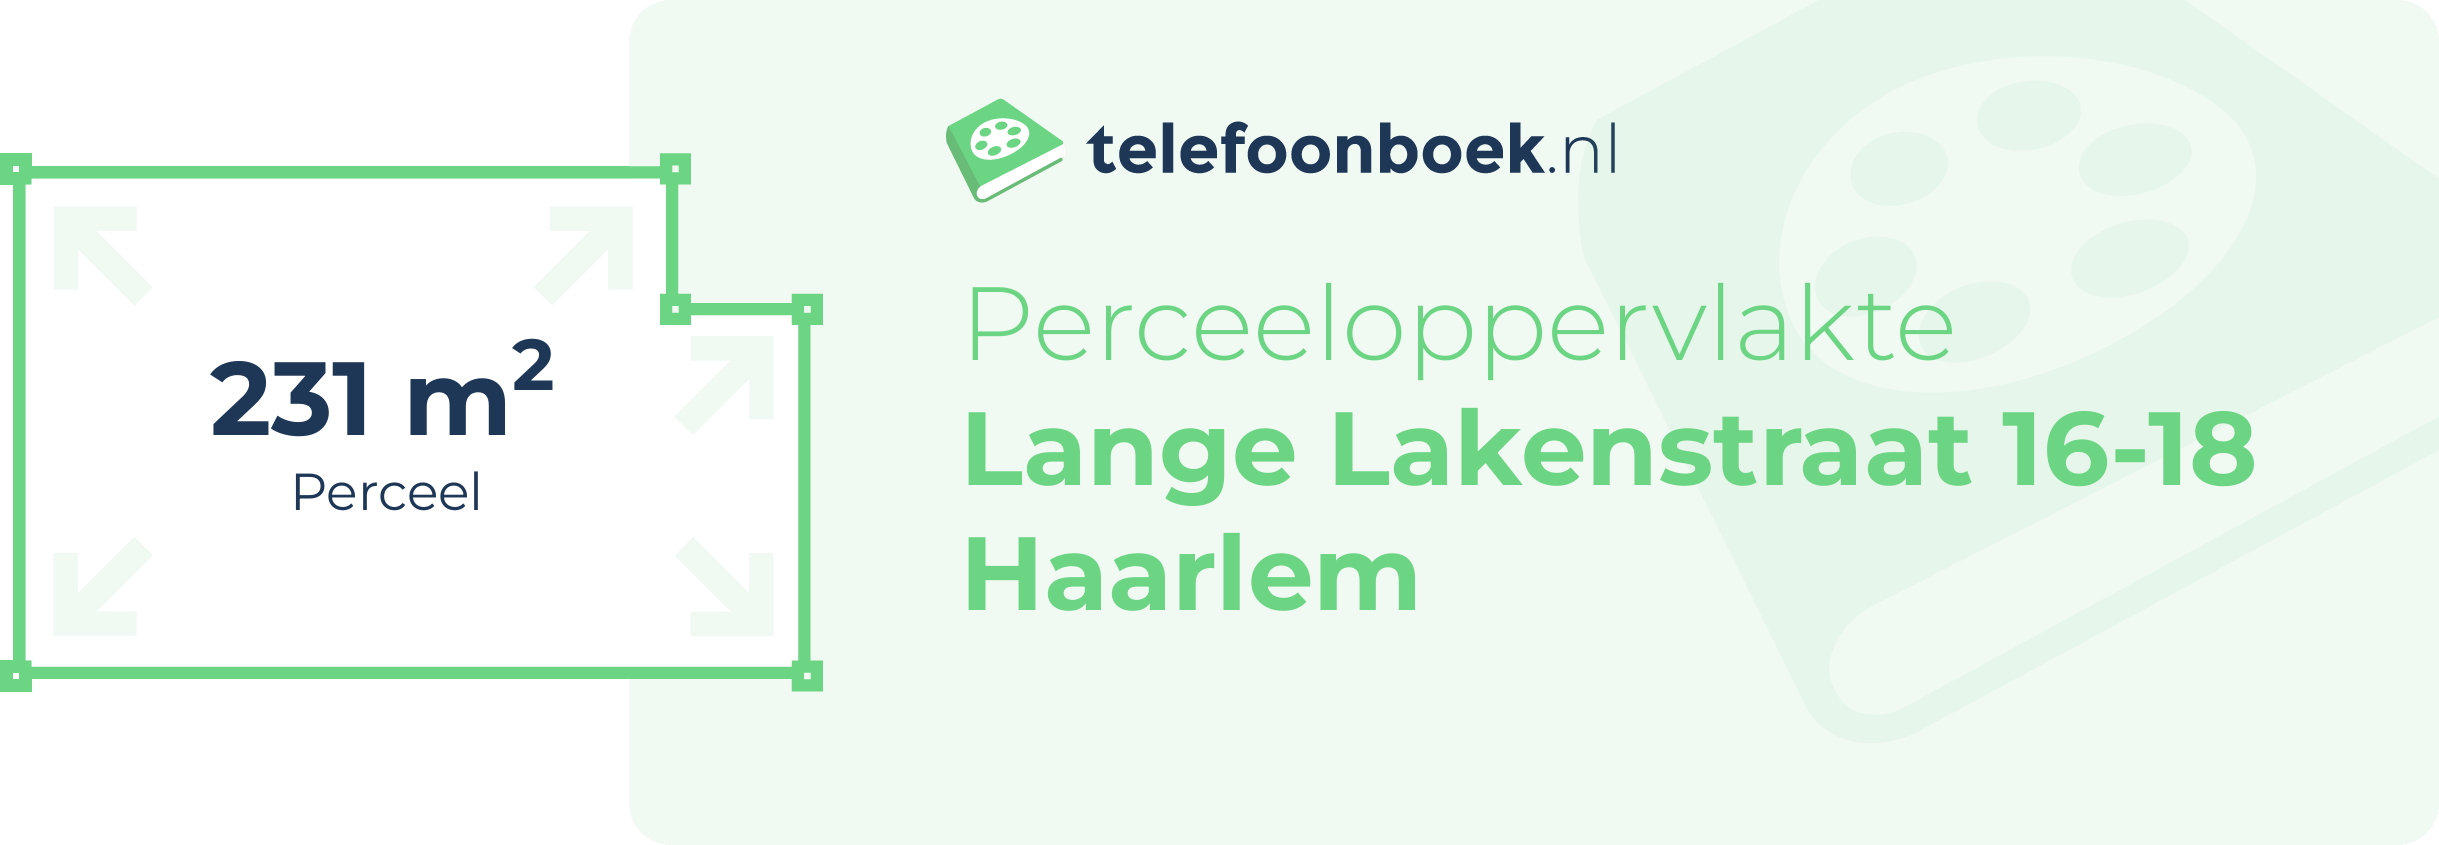 Perceeloppervlakte Lange Lakenstraat 16-18 Haarlem